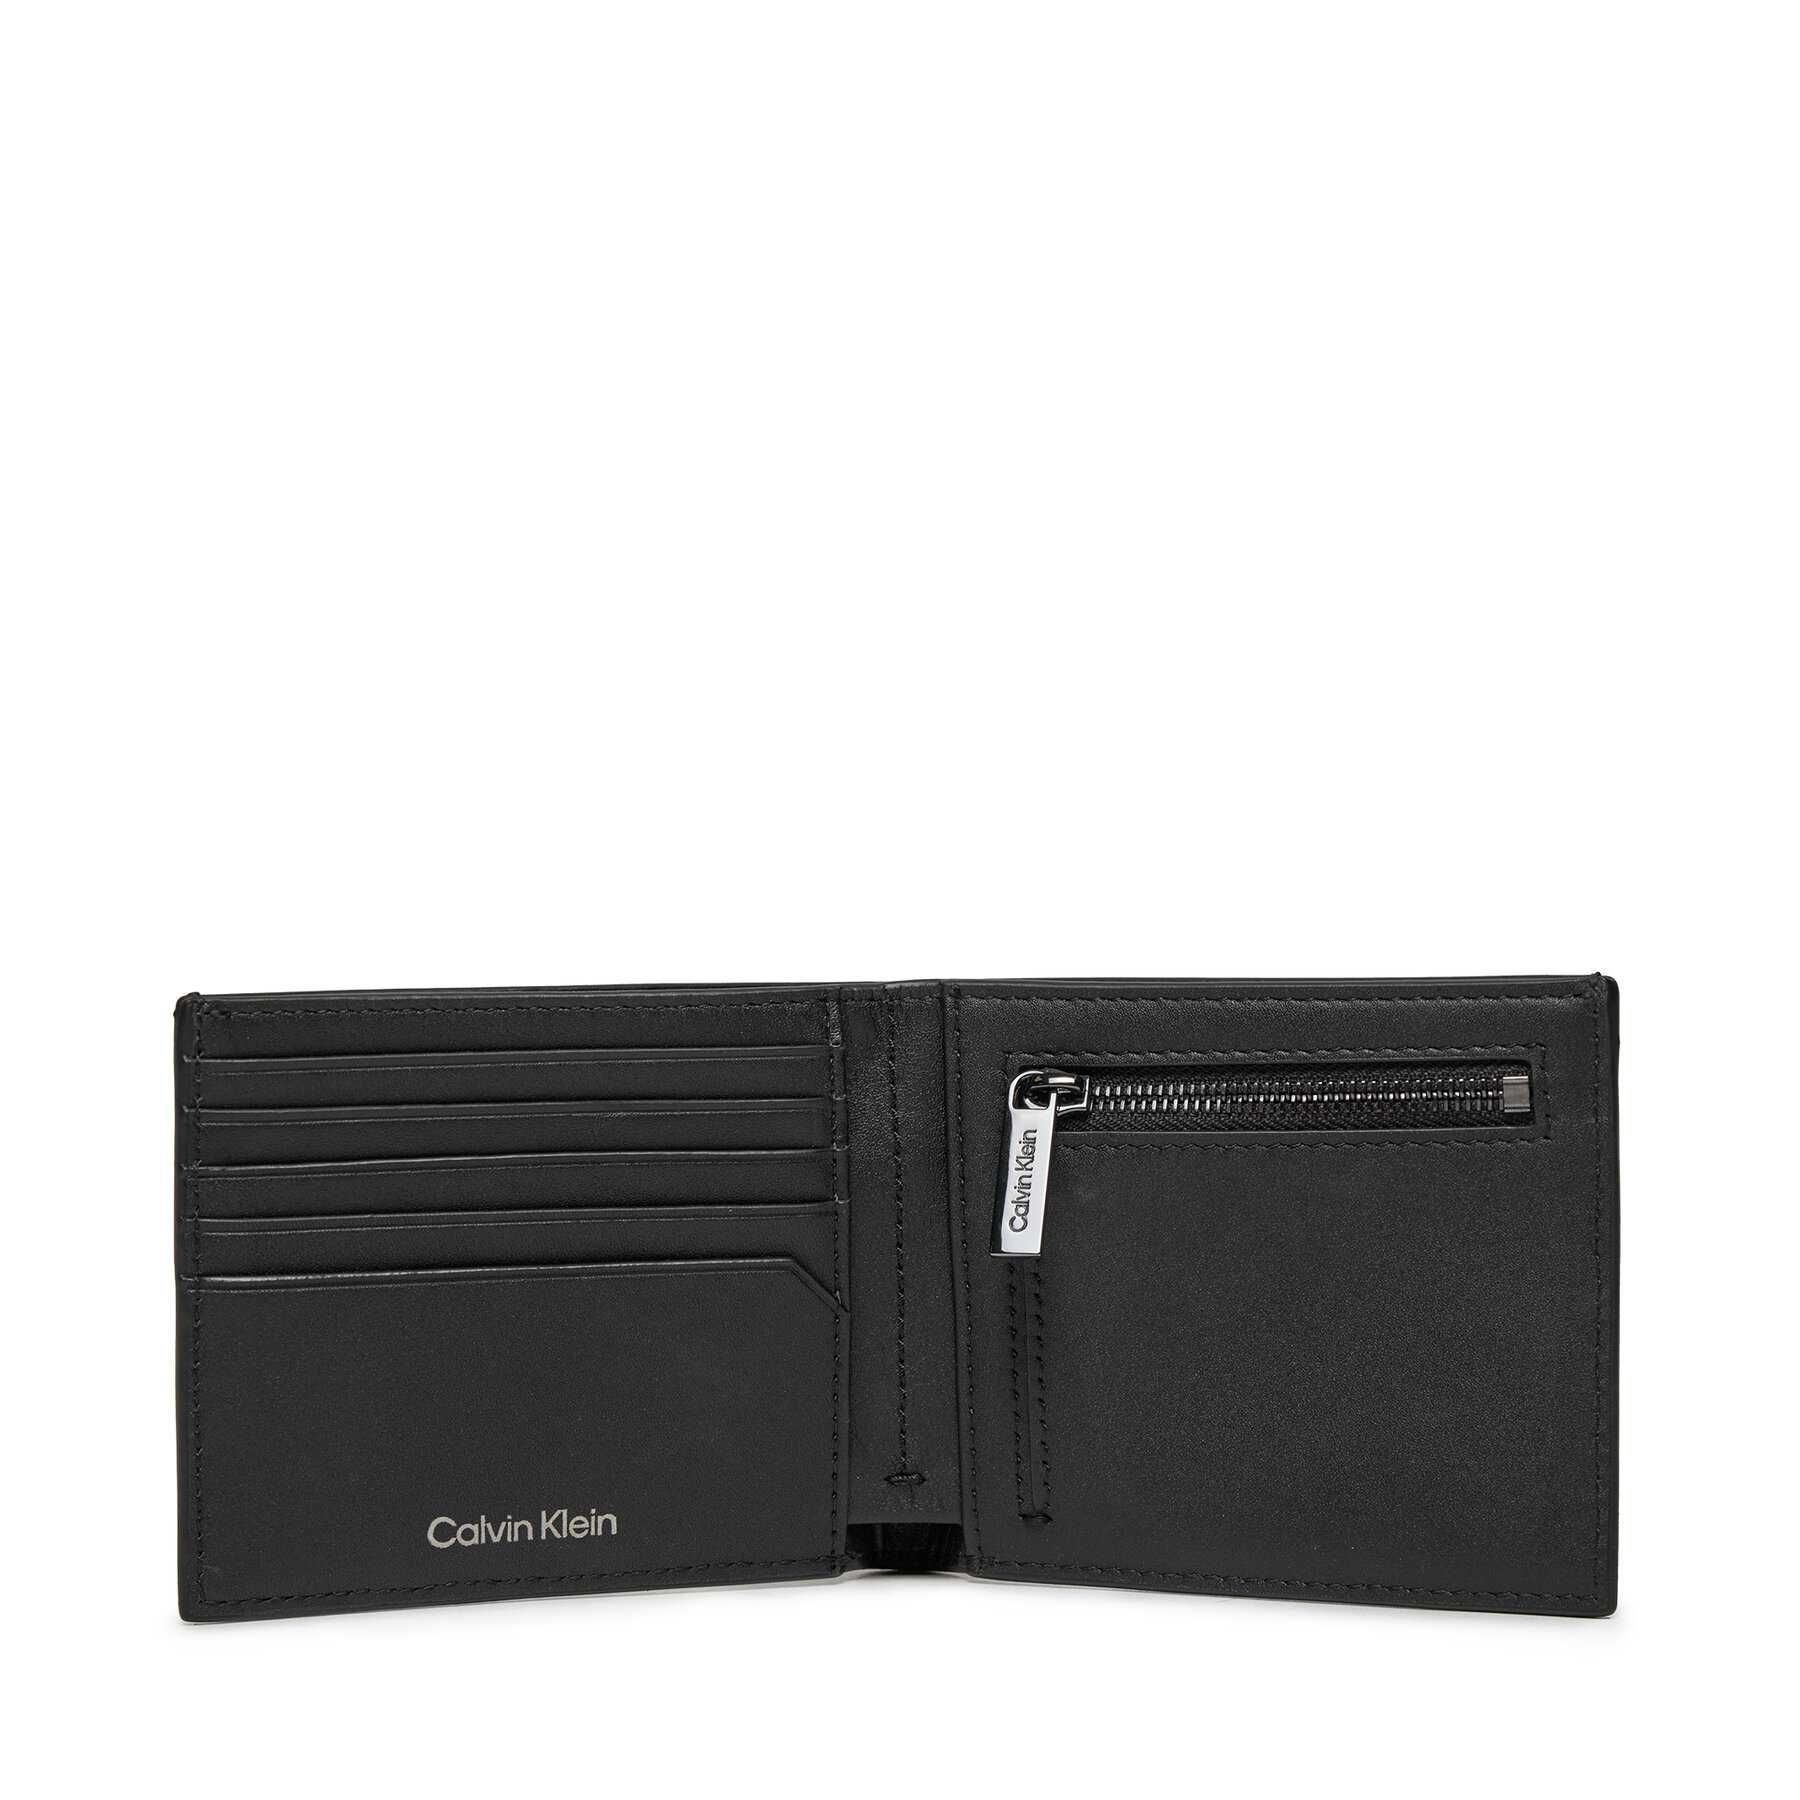 Мужской кошелек Calvin Klein  черный на подарок оригинал